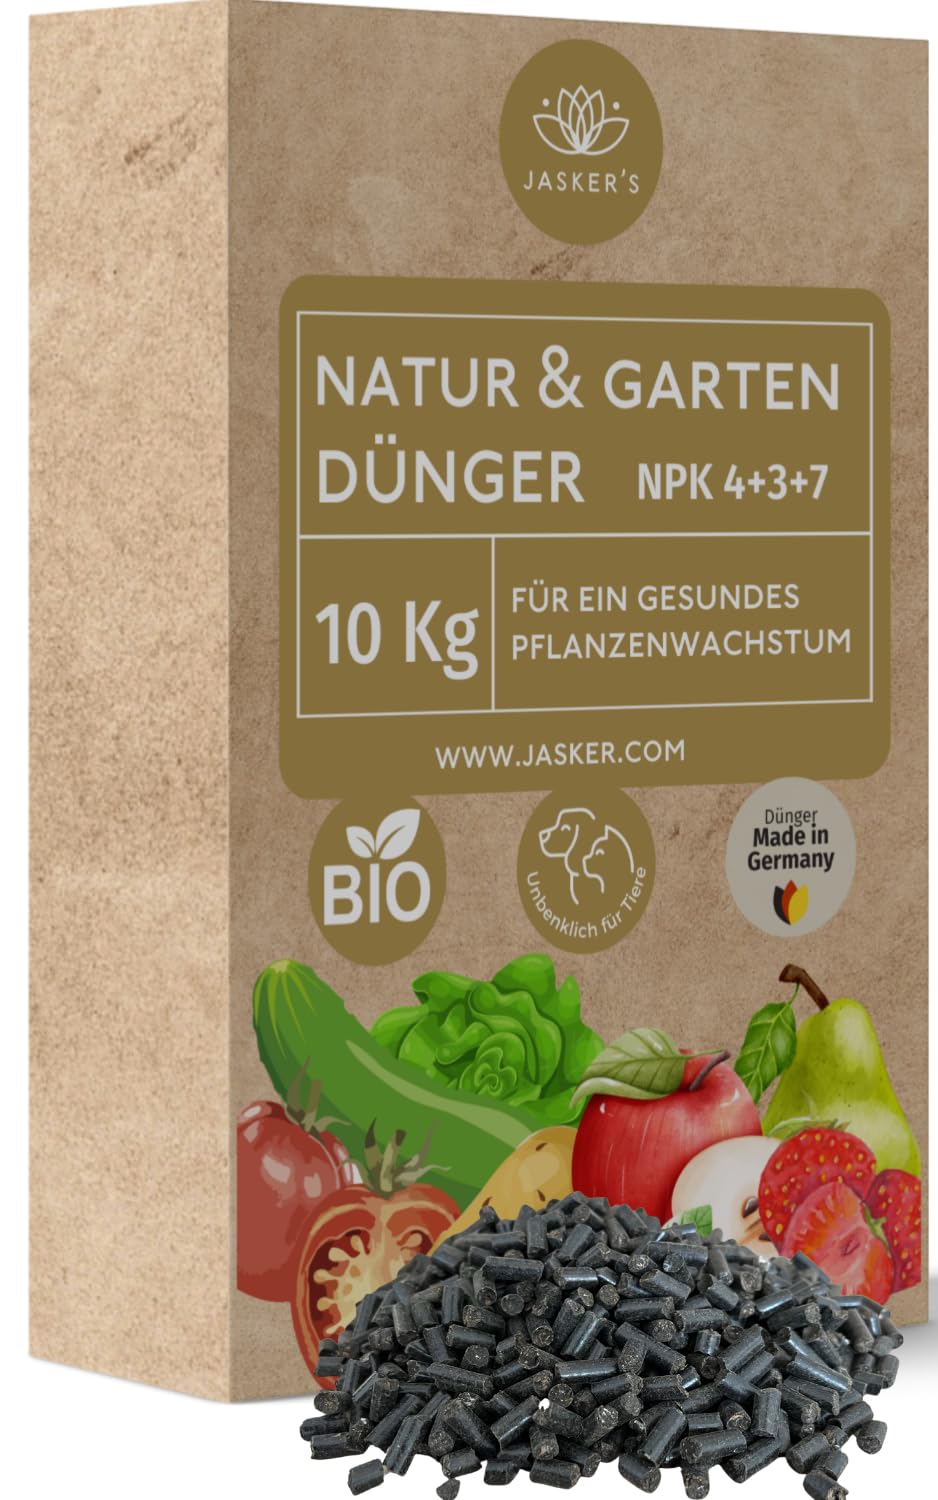 Bio Dünger 10 Kg - 100% Naturdünger & Universaldünger - Ideal als Veganer Dünger für Obst & Gemüse - Pflanzendünger mit viel Kalium & Magnesium - Organischer Volldünger - Bio Dünger Gemüse